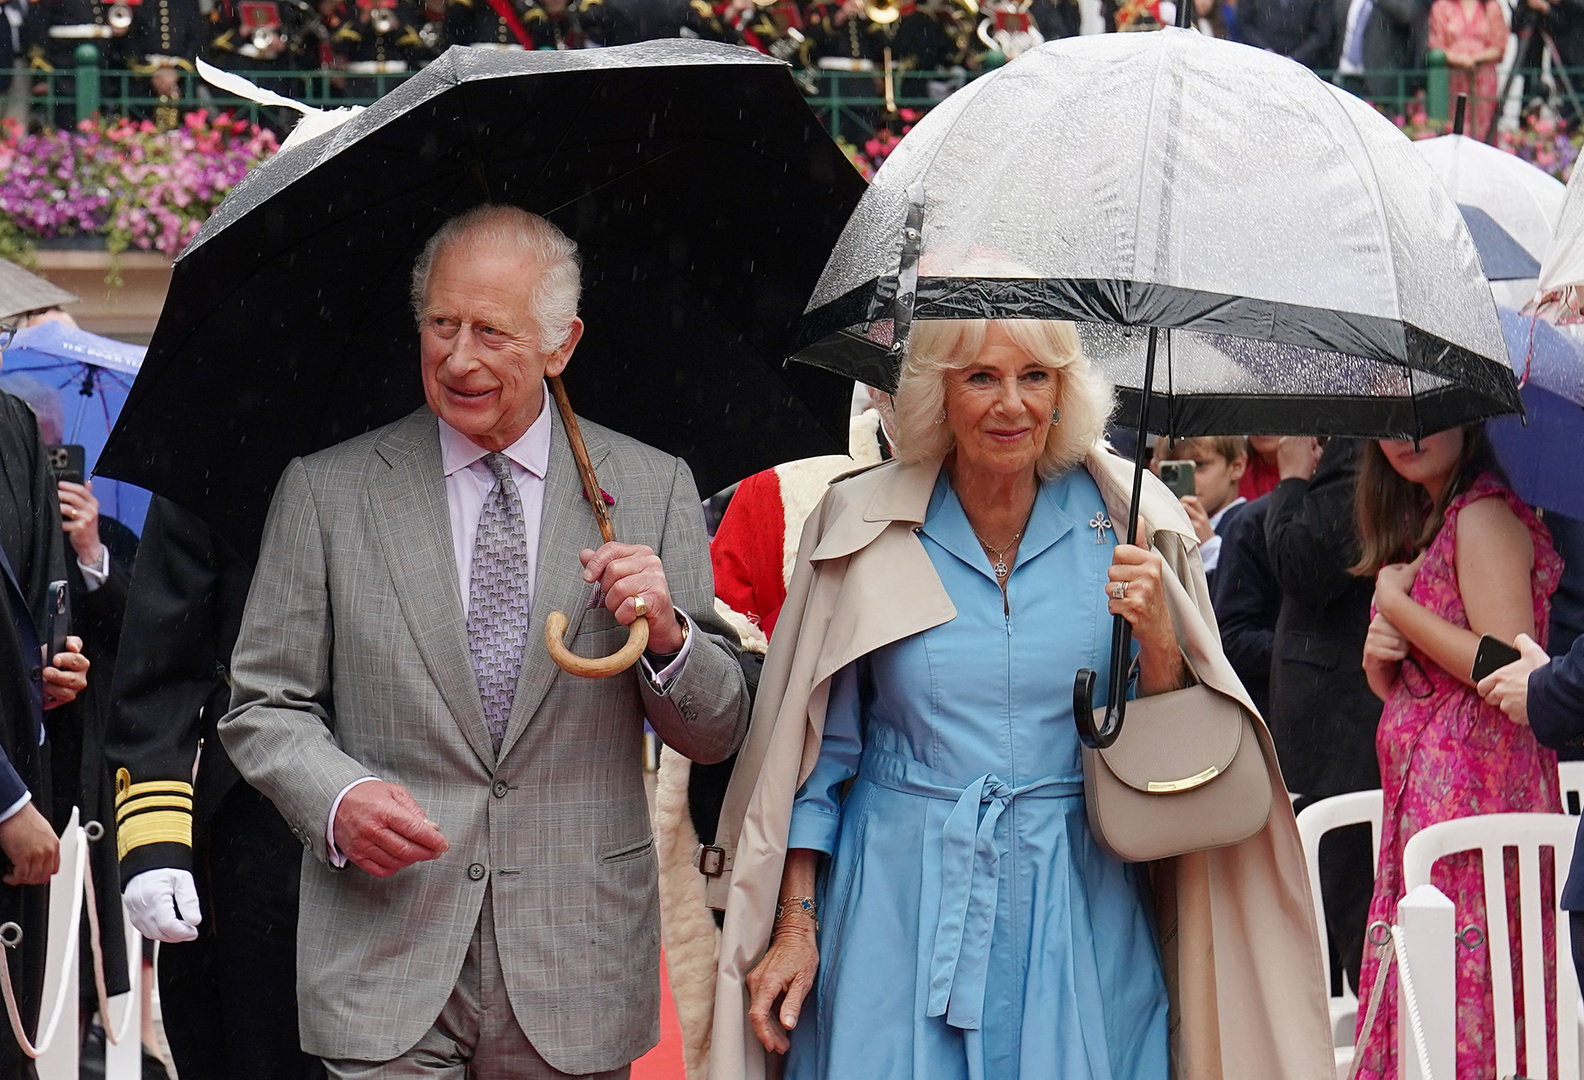 Короля Карла III с женой срочно увезли с мероприятия из-за угрозы безопасности